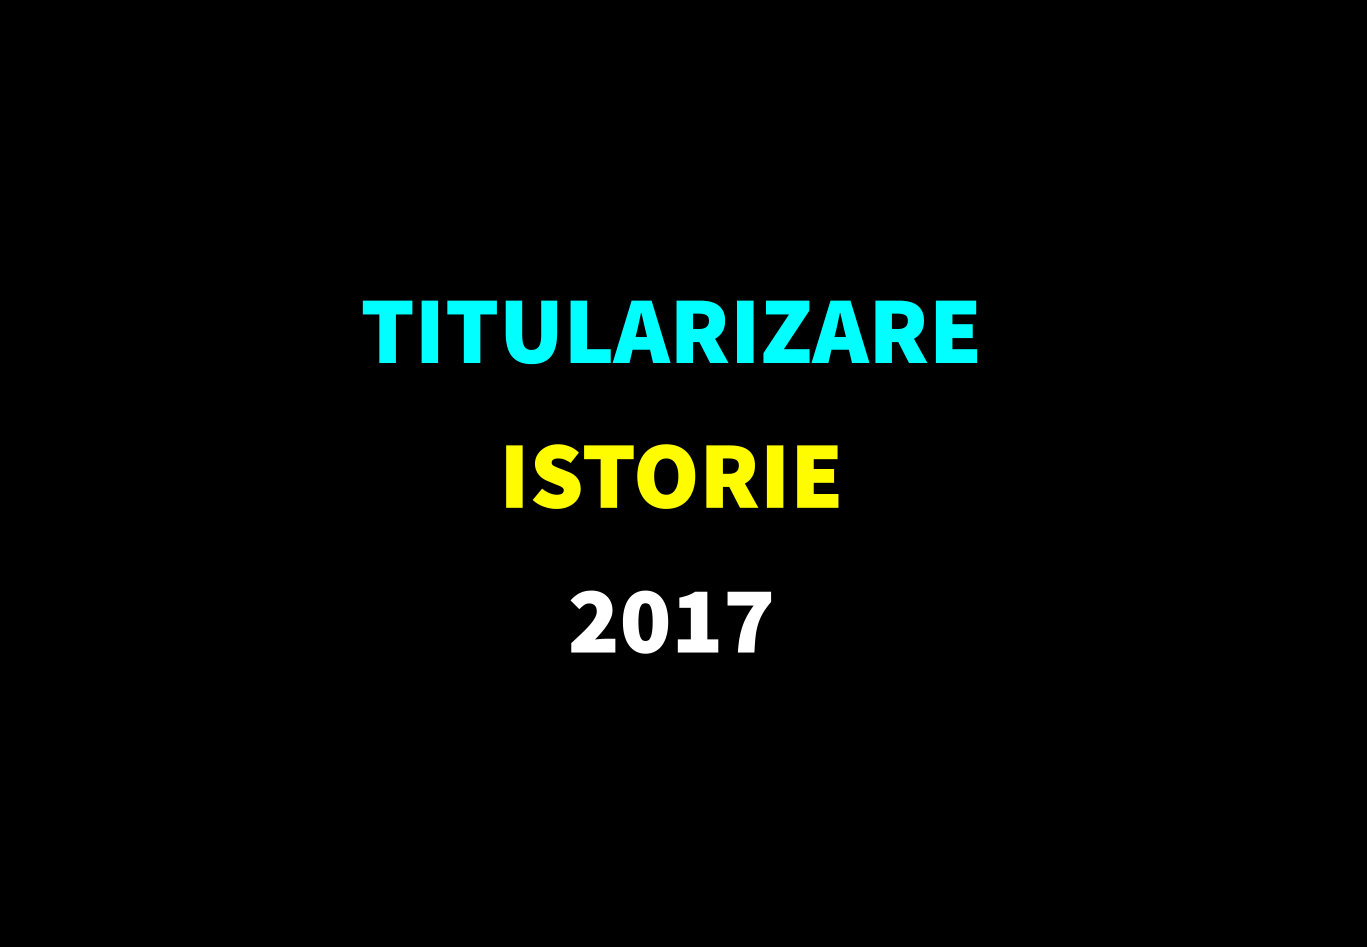 Titularizare istorie 2017